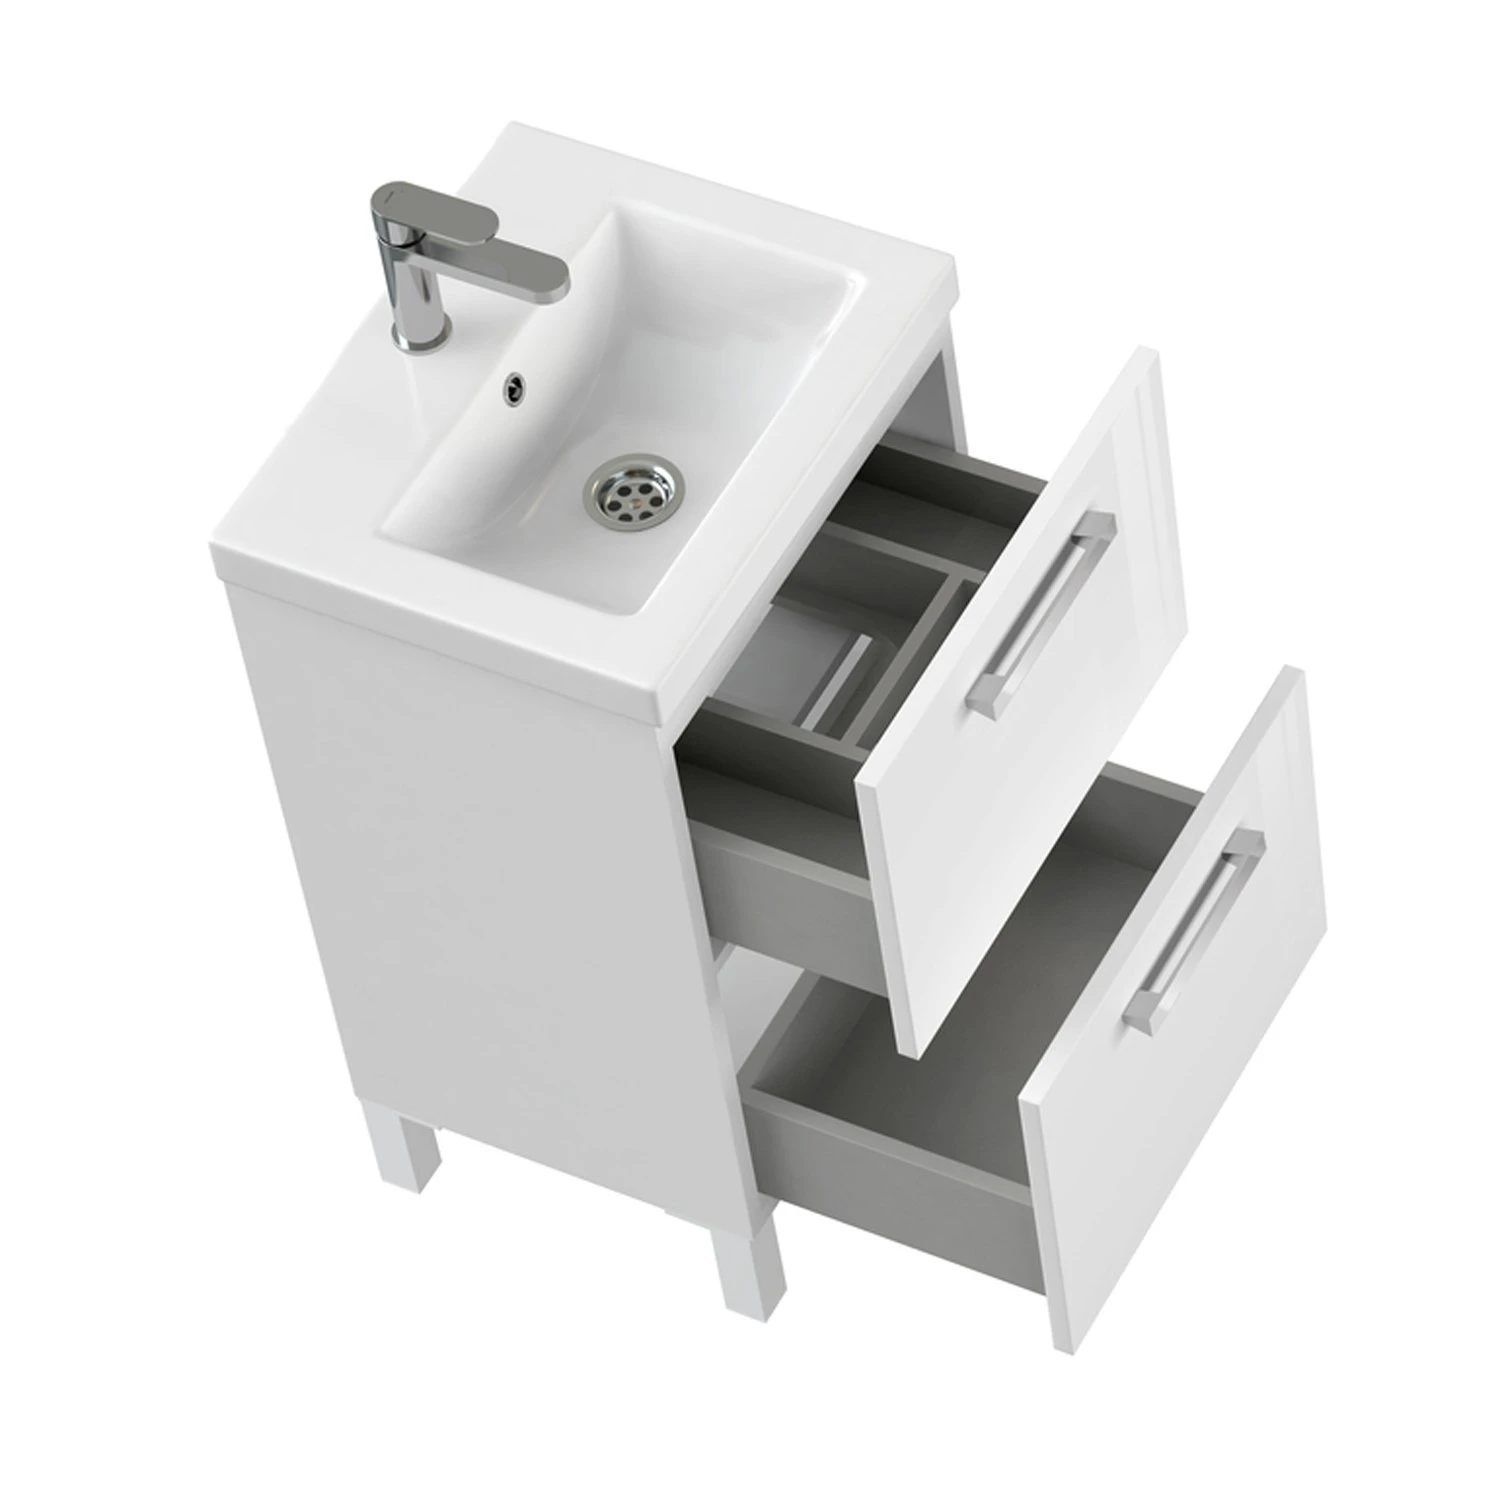 Мебель для ванной Cersanit Melar 50, с раковиной и смесителем, цвет белый